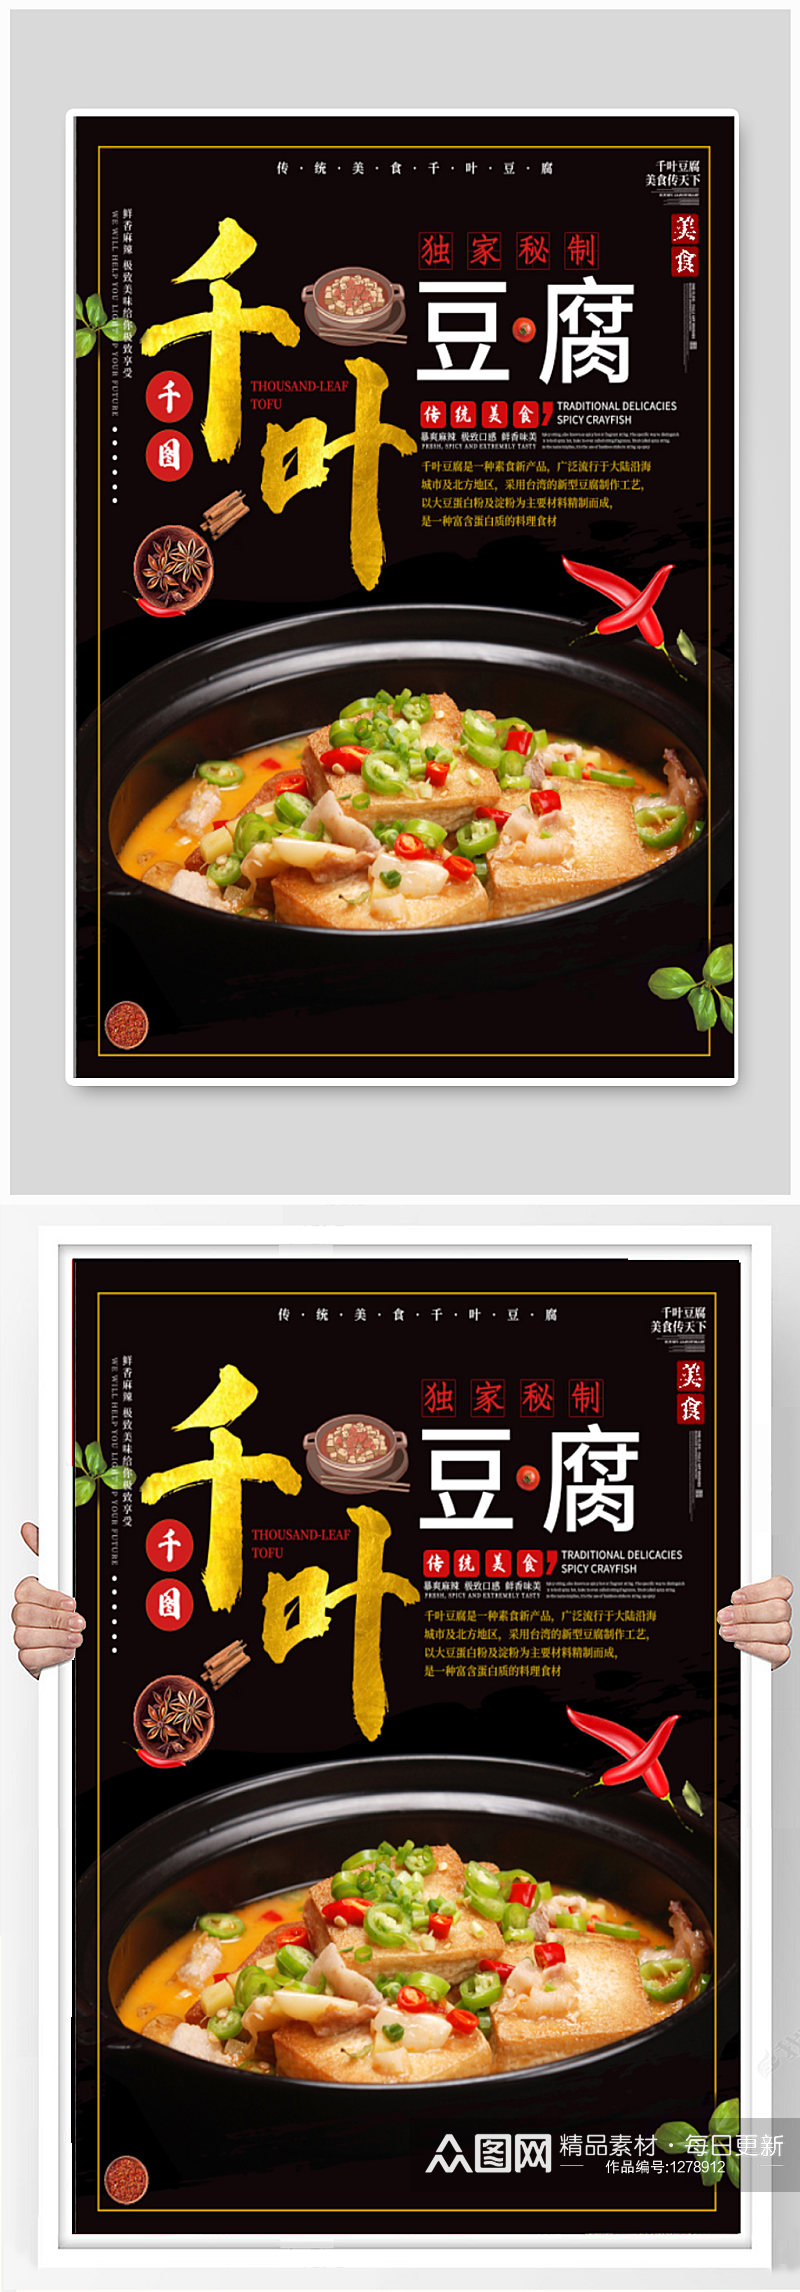 千叶豆腐美食海报素材